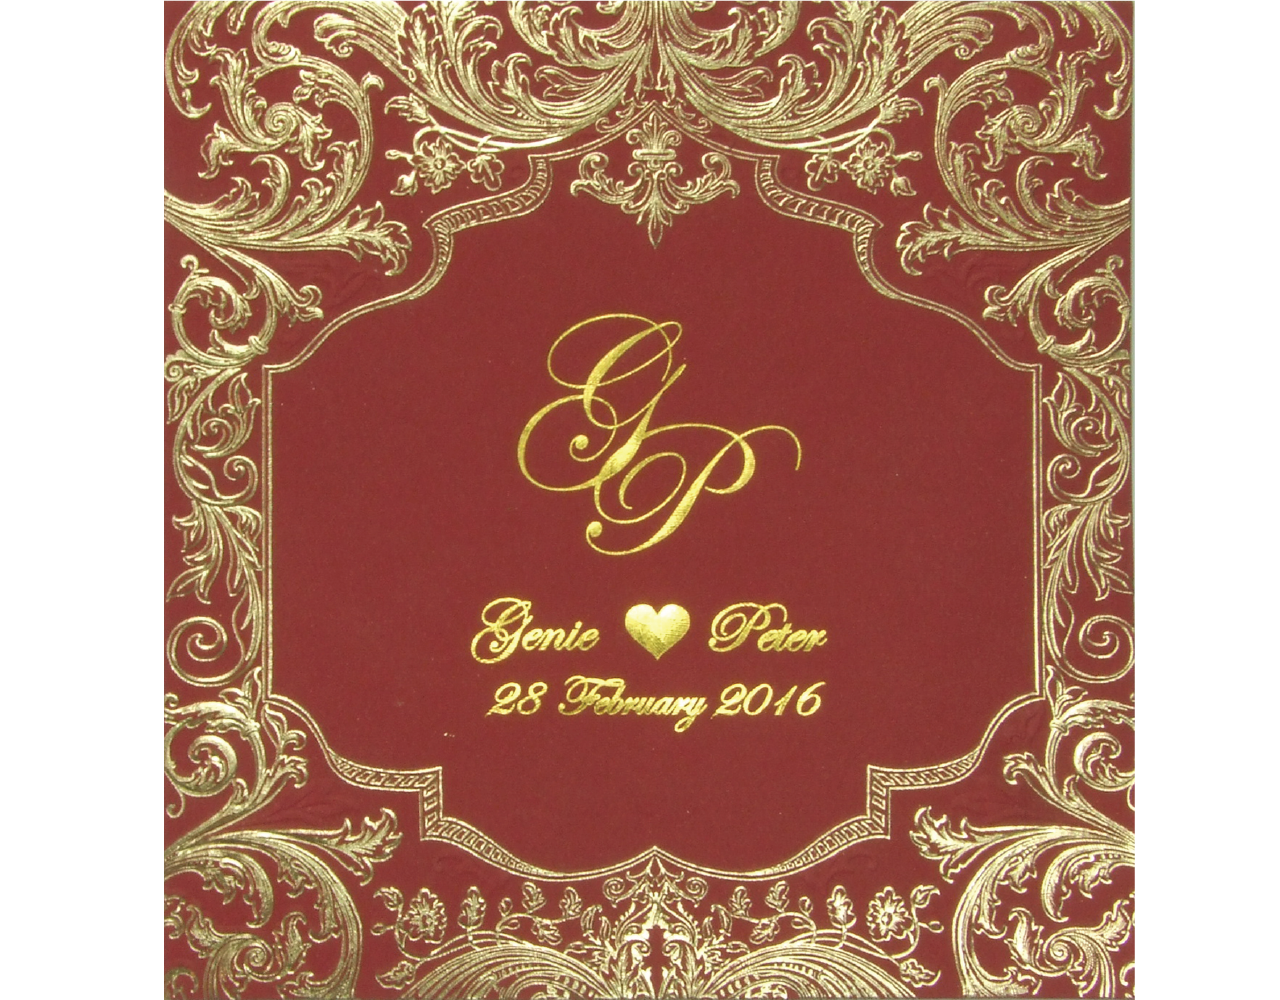 การ์ดแต่งงาน การ์ดเชิญ สีแดง ลวดลายหรูหรา ปั๊มนูน ปั๊มฟอยล์ทอง พร้อมกระดาษไส้ใน by Grace greeting Wedding 16.2 x 16.5 cm SP 5803 Red